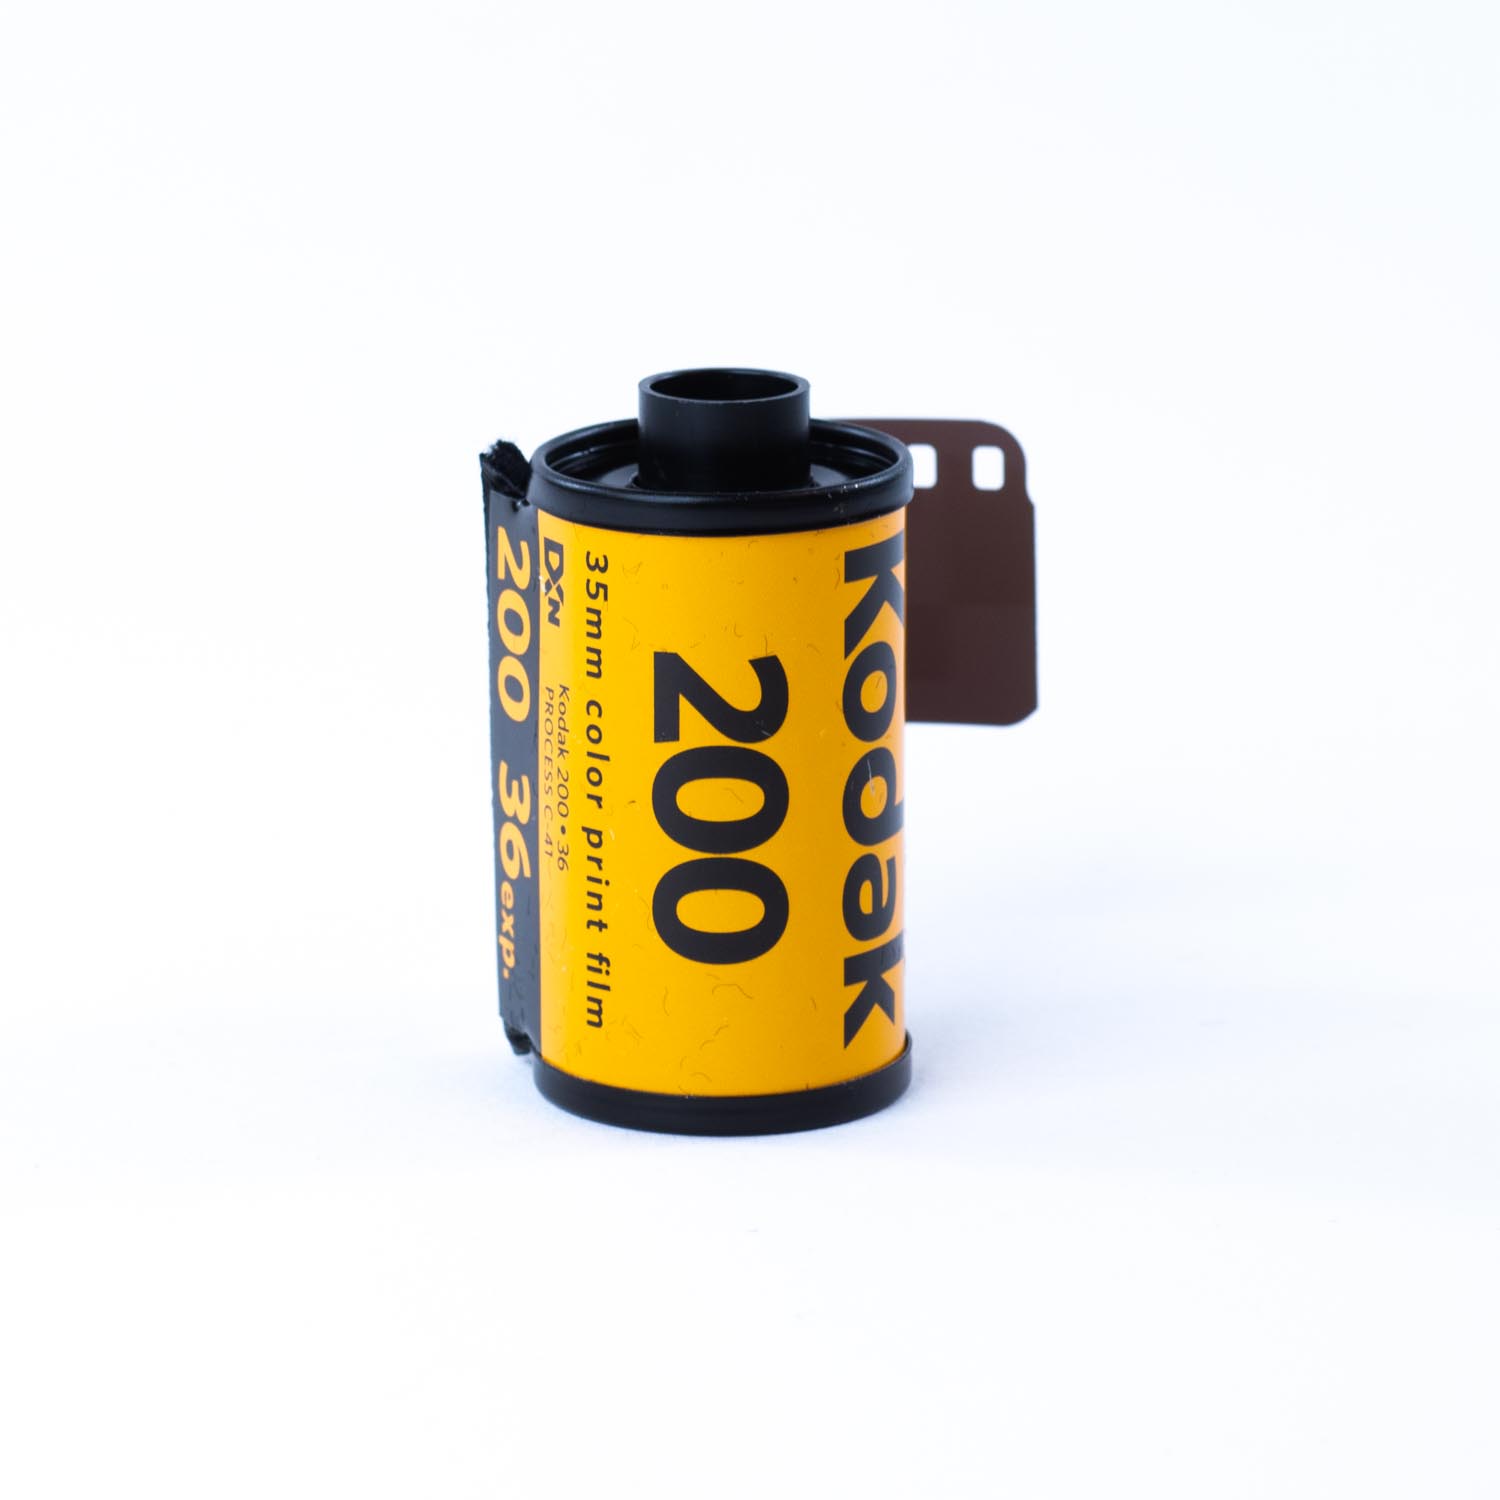 TVignette pour Kodak GOLD 200, 36 poses, Rouleau